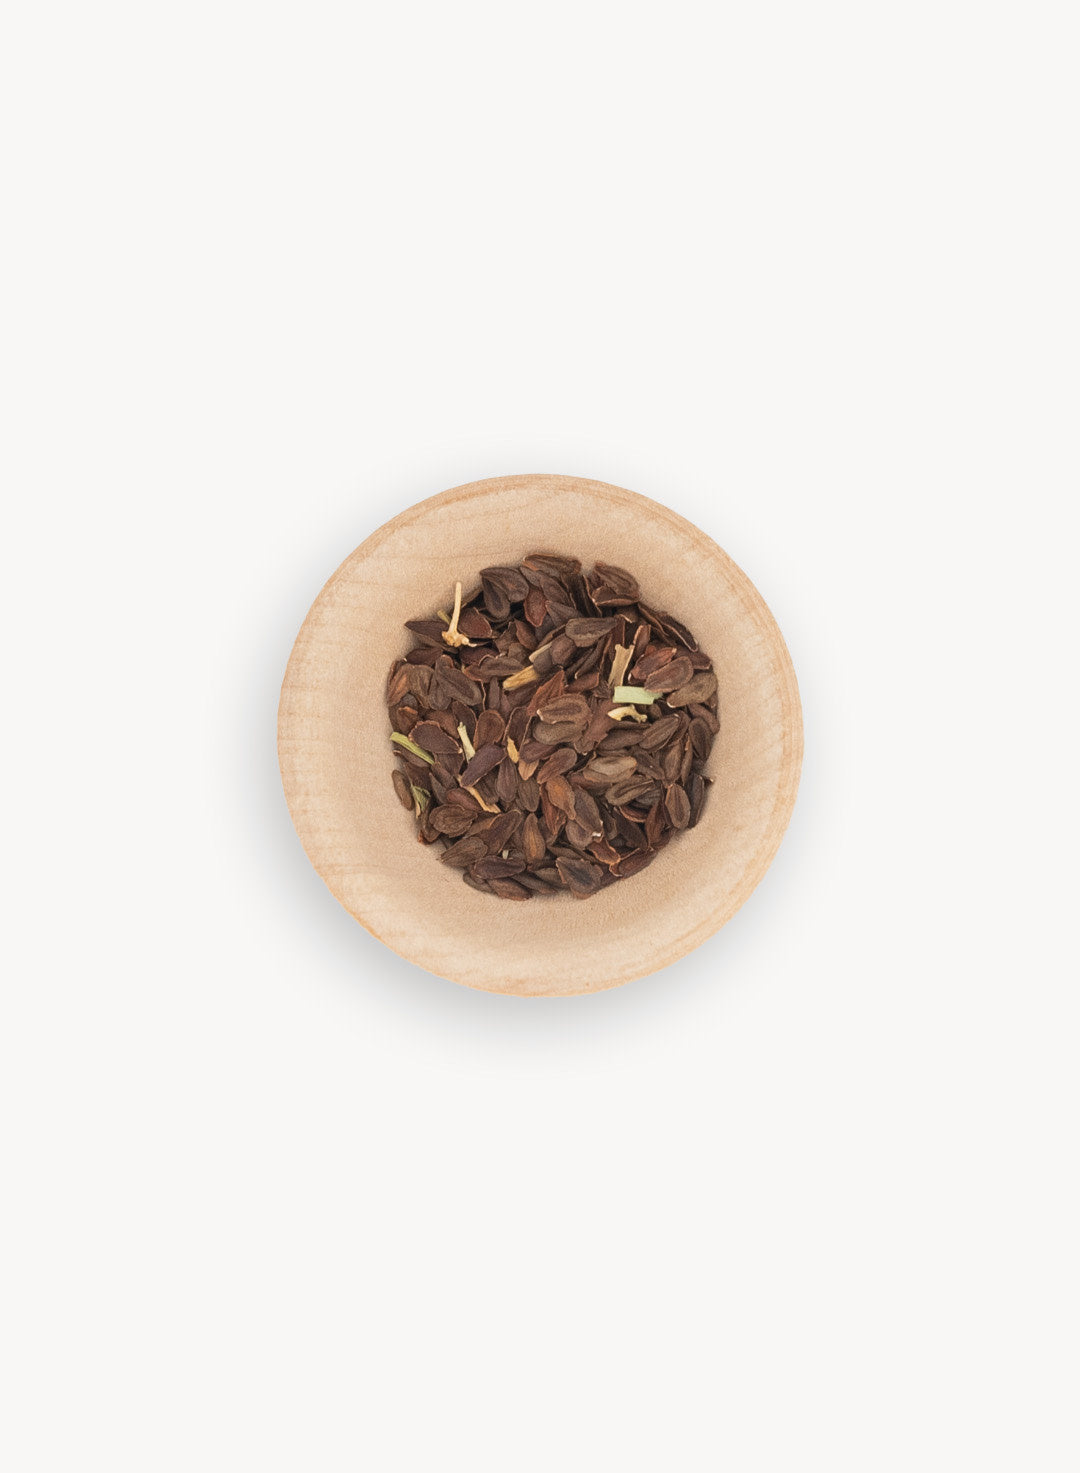 3-seed-product-showy-milkweed.jpg